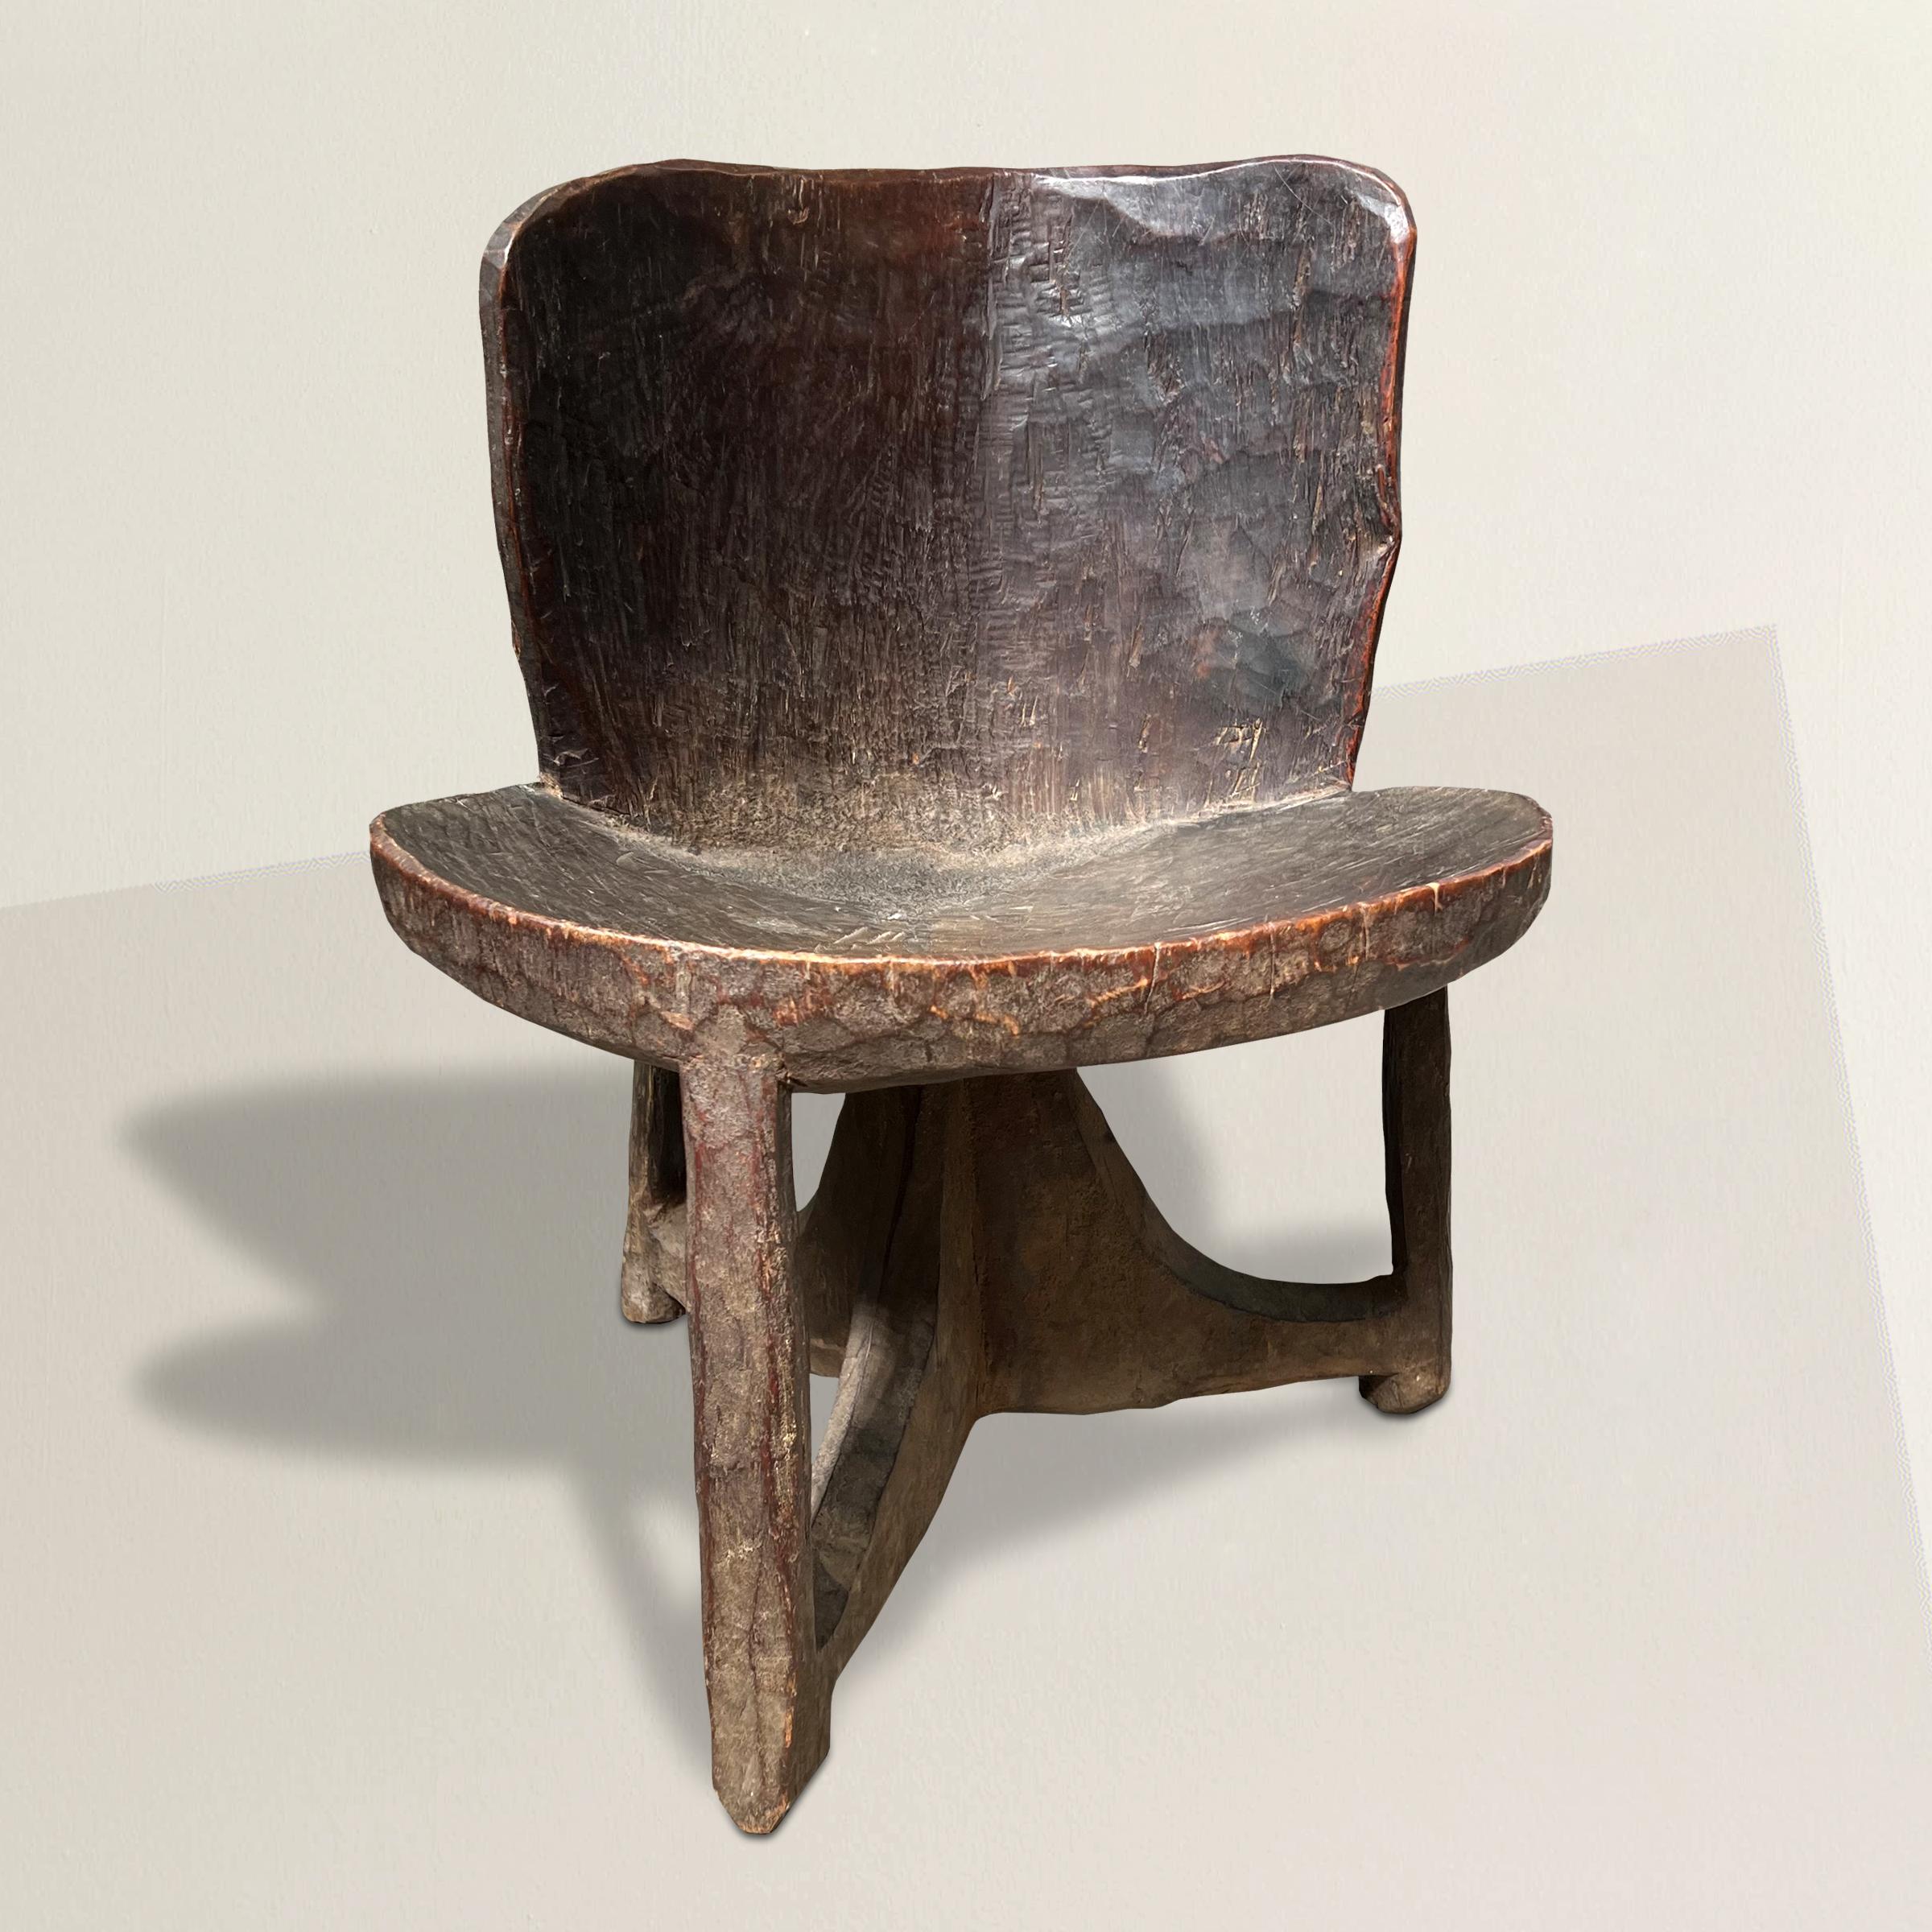 Ein auffallender und seltener Stuhl des äthiopischen Gurage-Volkes aus dem frühen 20. Jahrhundert mit modernistischem Geist, aus einem einzigen Stück Holz geschnitzt, mit einer gebogenen Rückenlehne und einer runden, konvexen Sitzfläche, die von